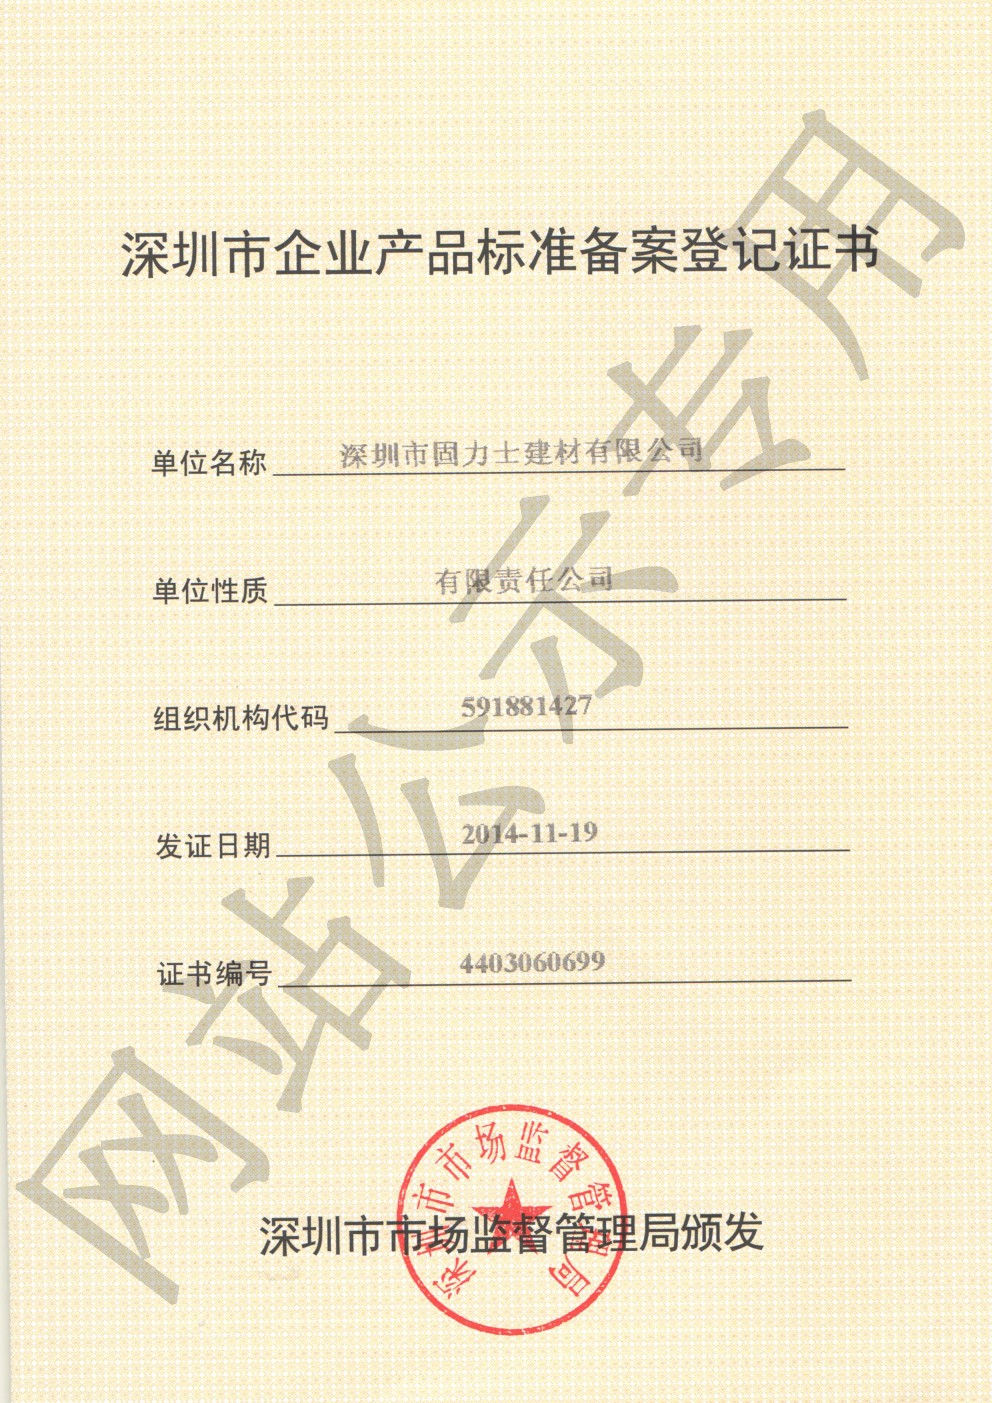 甘孜企业产品标准登记证书